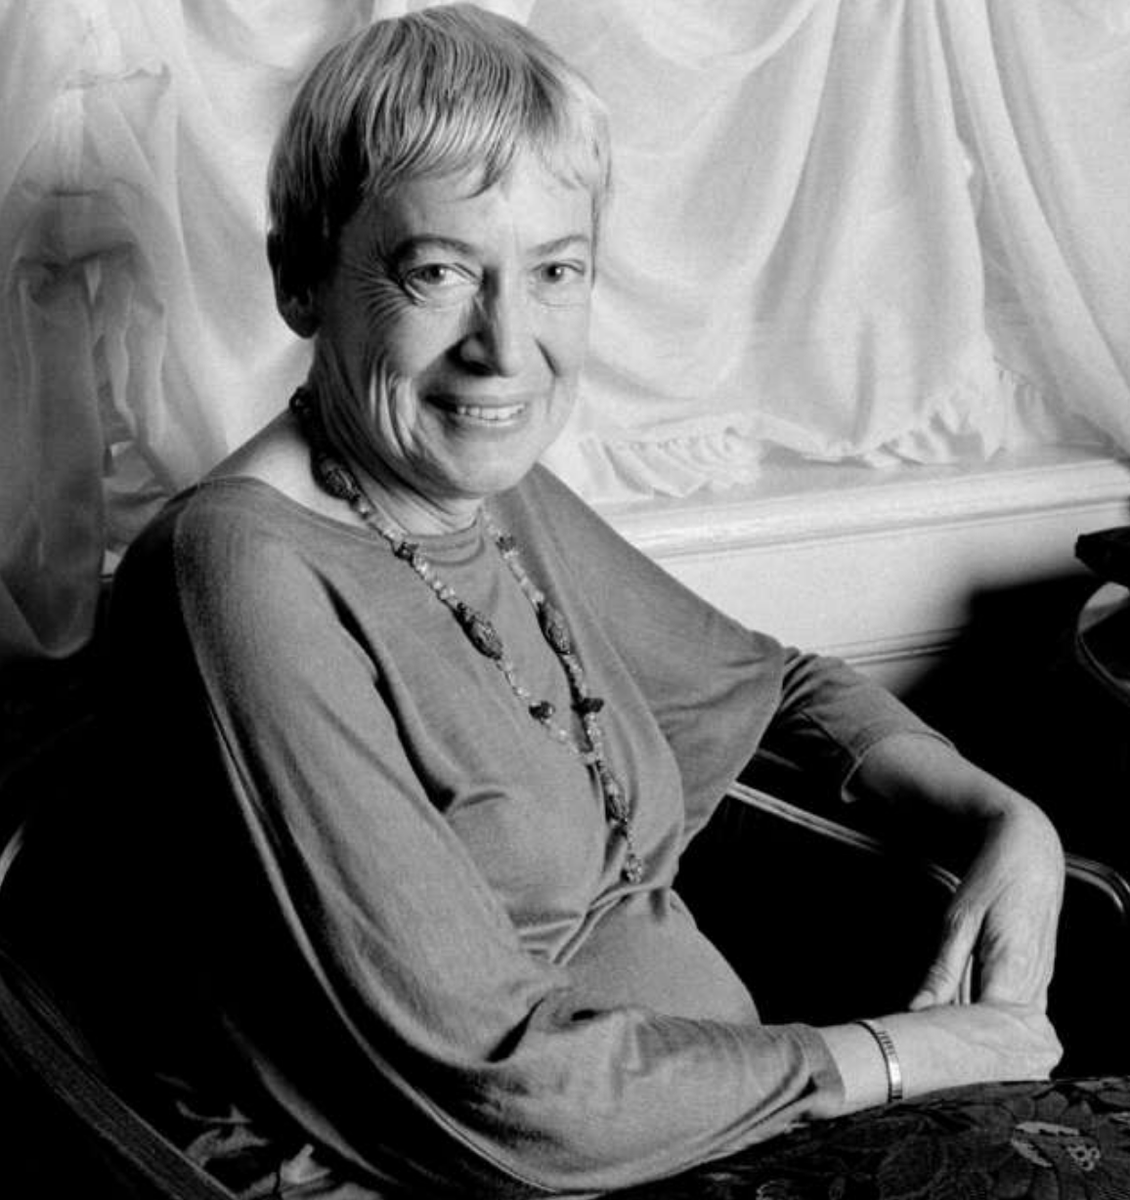 Ursula Le Guin'i kaybetmenin yıl dönümünde sevgi ve saygıyla anıyoruz. Kitaplarıyla bize kattığı hayal gücüne minnettarız.

#UrsulaLeGuin ❤️